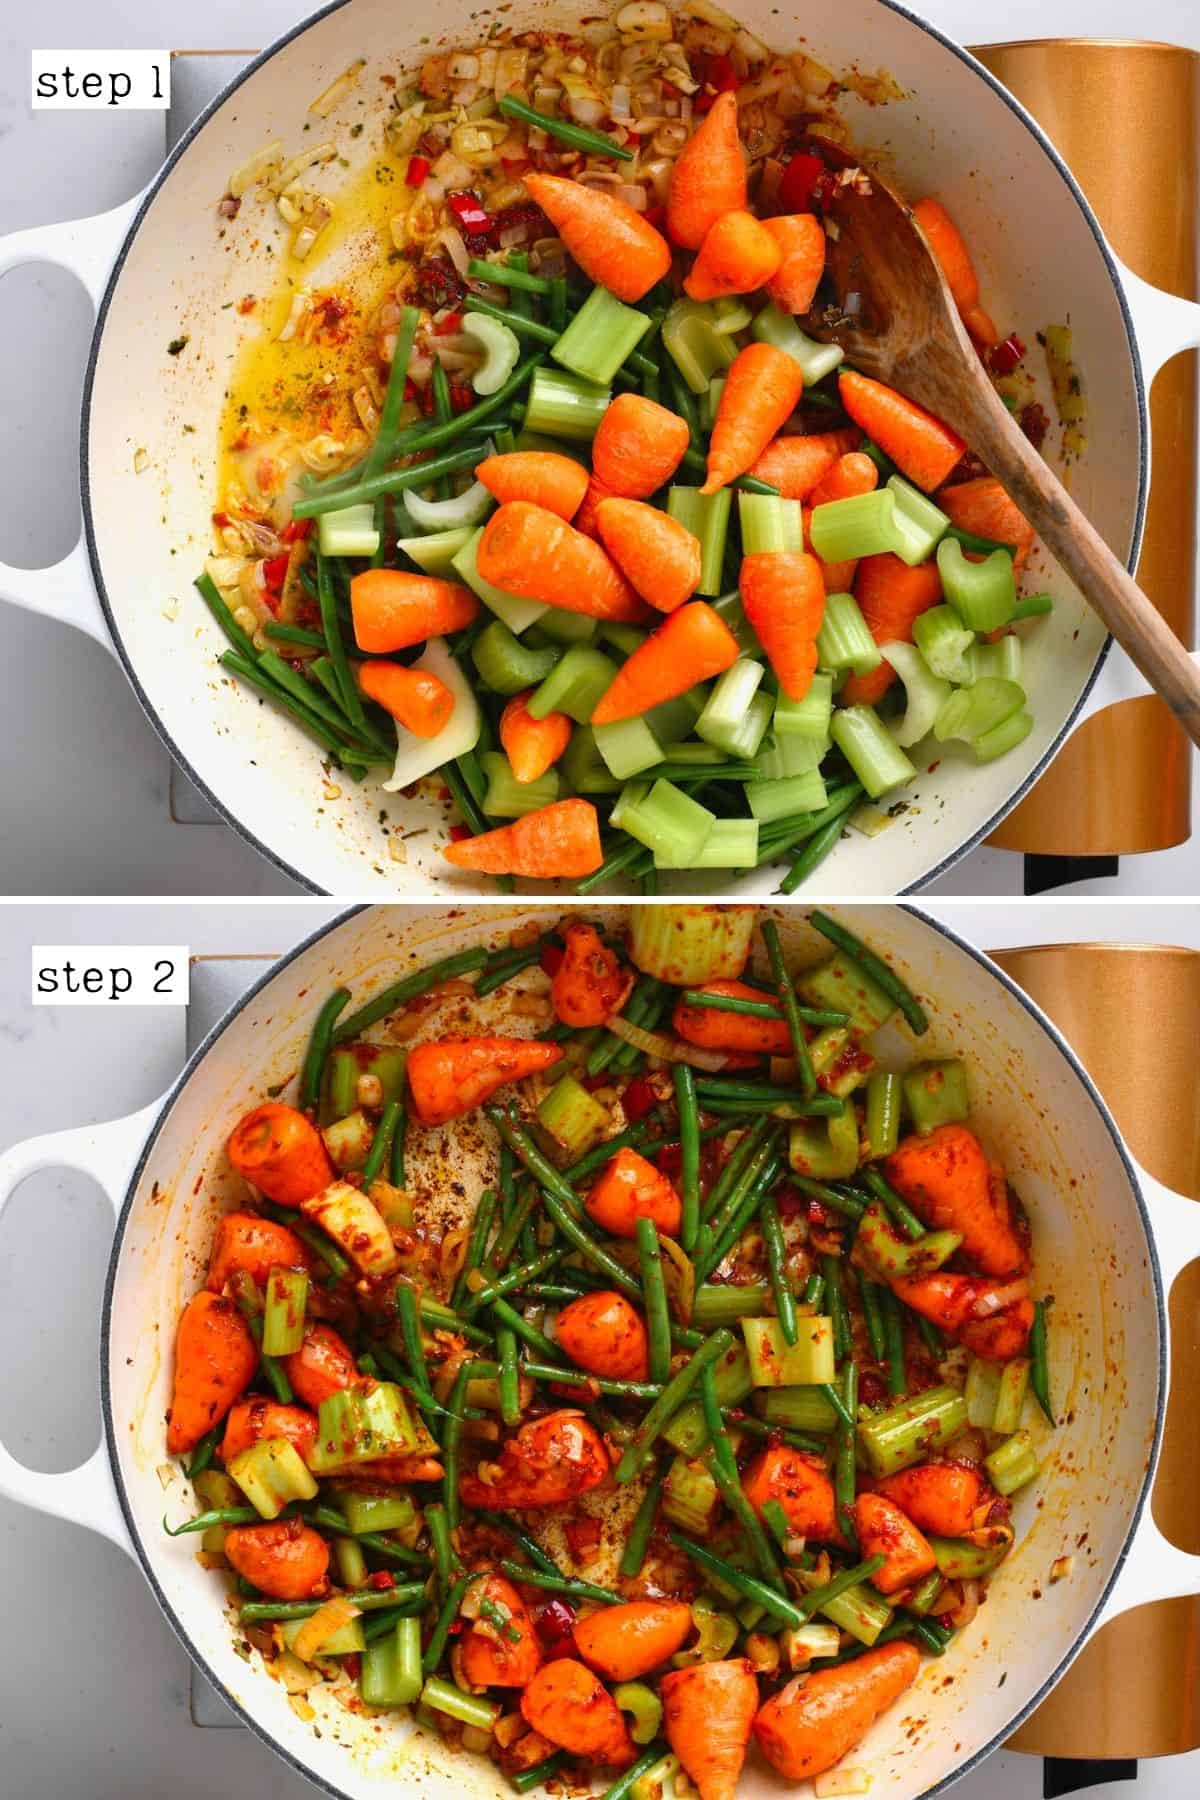 Steps for cooking vegetables